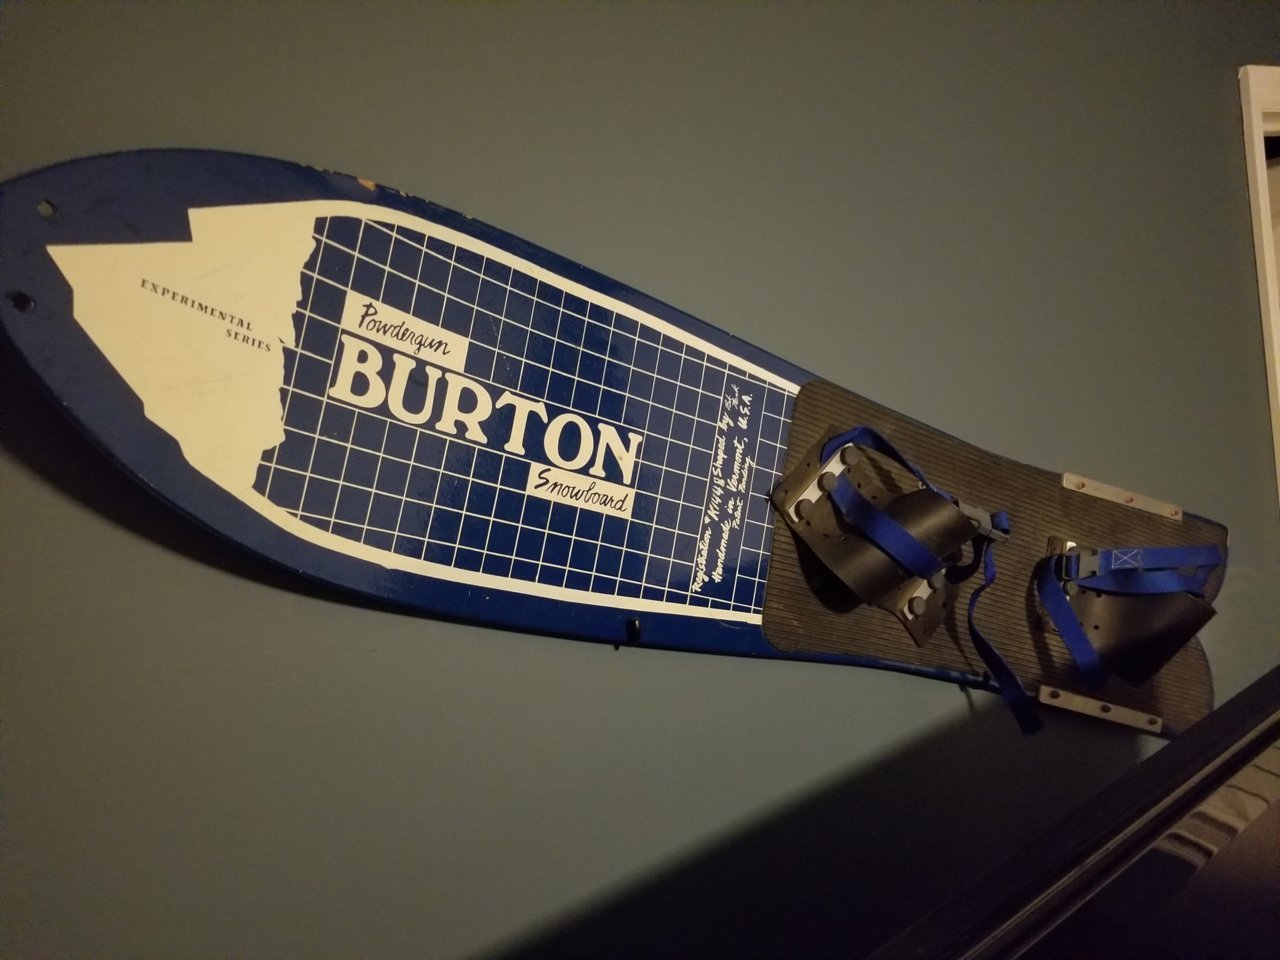 Burton snow board.jpg